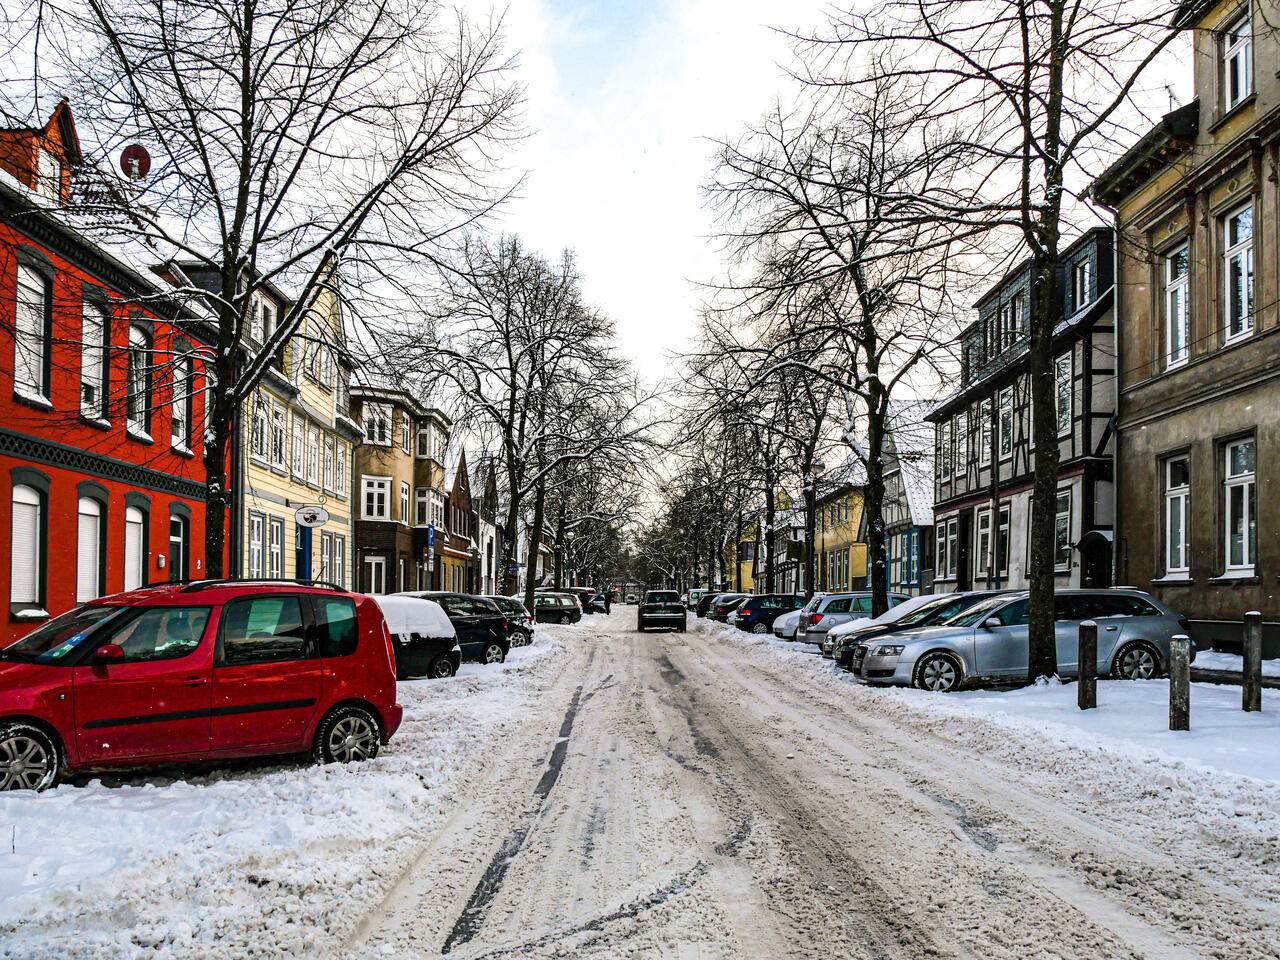 Schnebedeckte Straße mit parkenden Autos und einem sich entfernenden Fahrzeug.